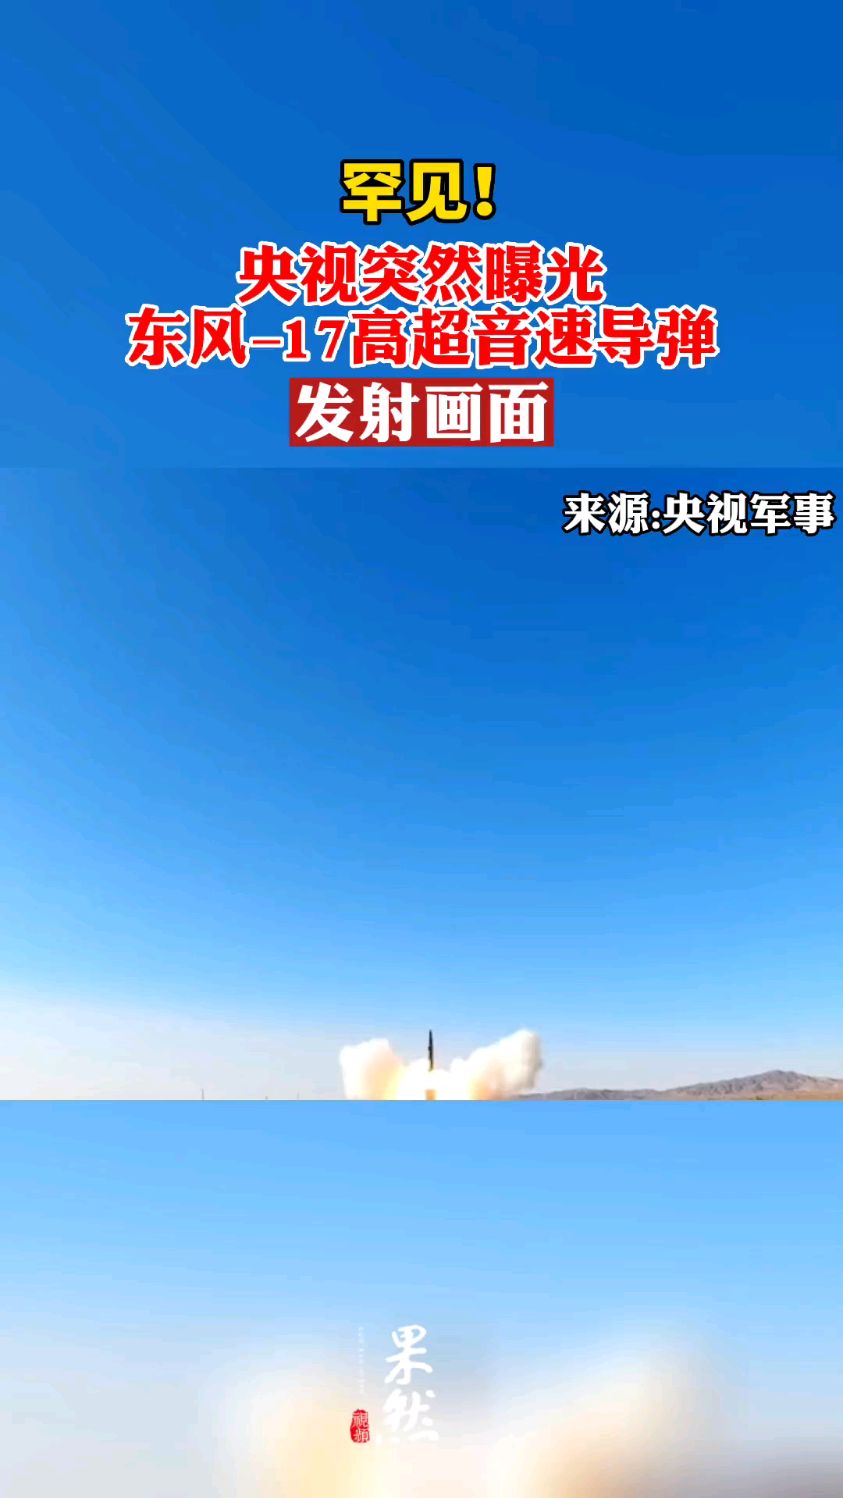 罕见东风–17高超音速导弹发射画面齐鲁晚报